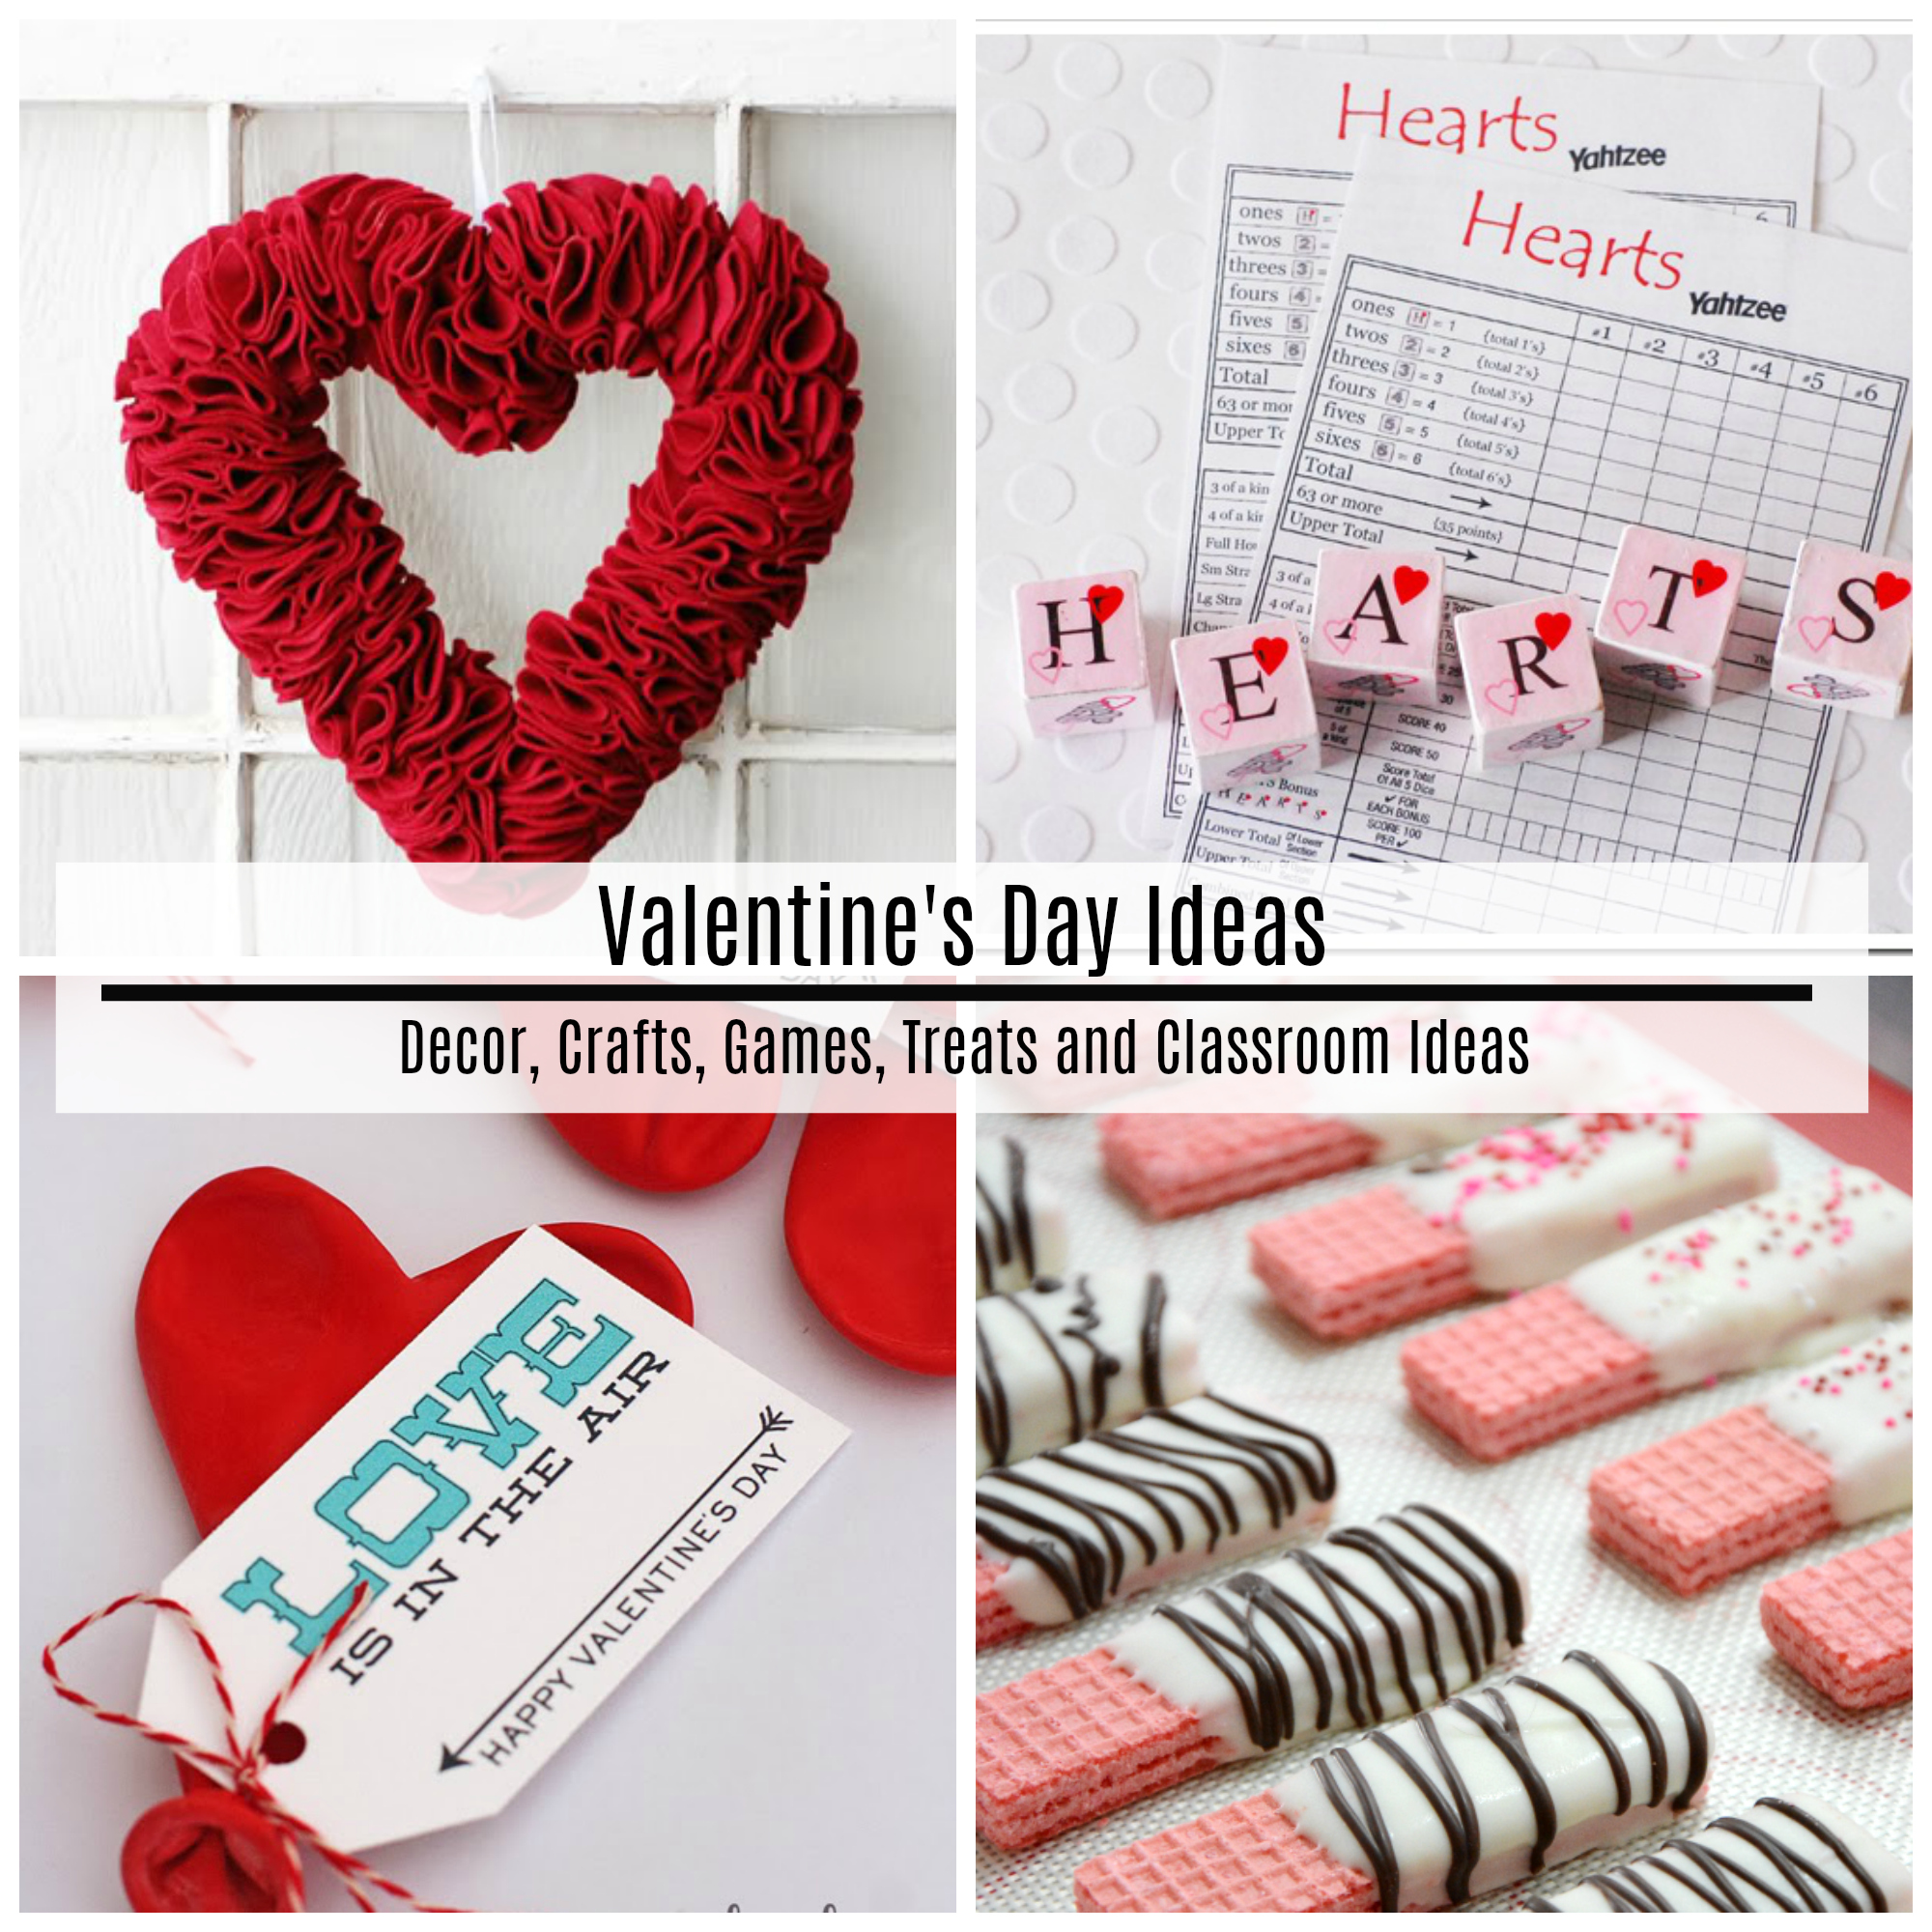 Valentines-Day-Decor-Crafts-Games-Treats-Desserts 